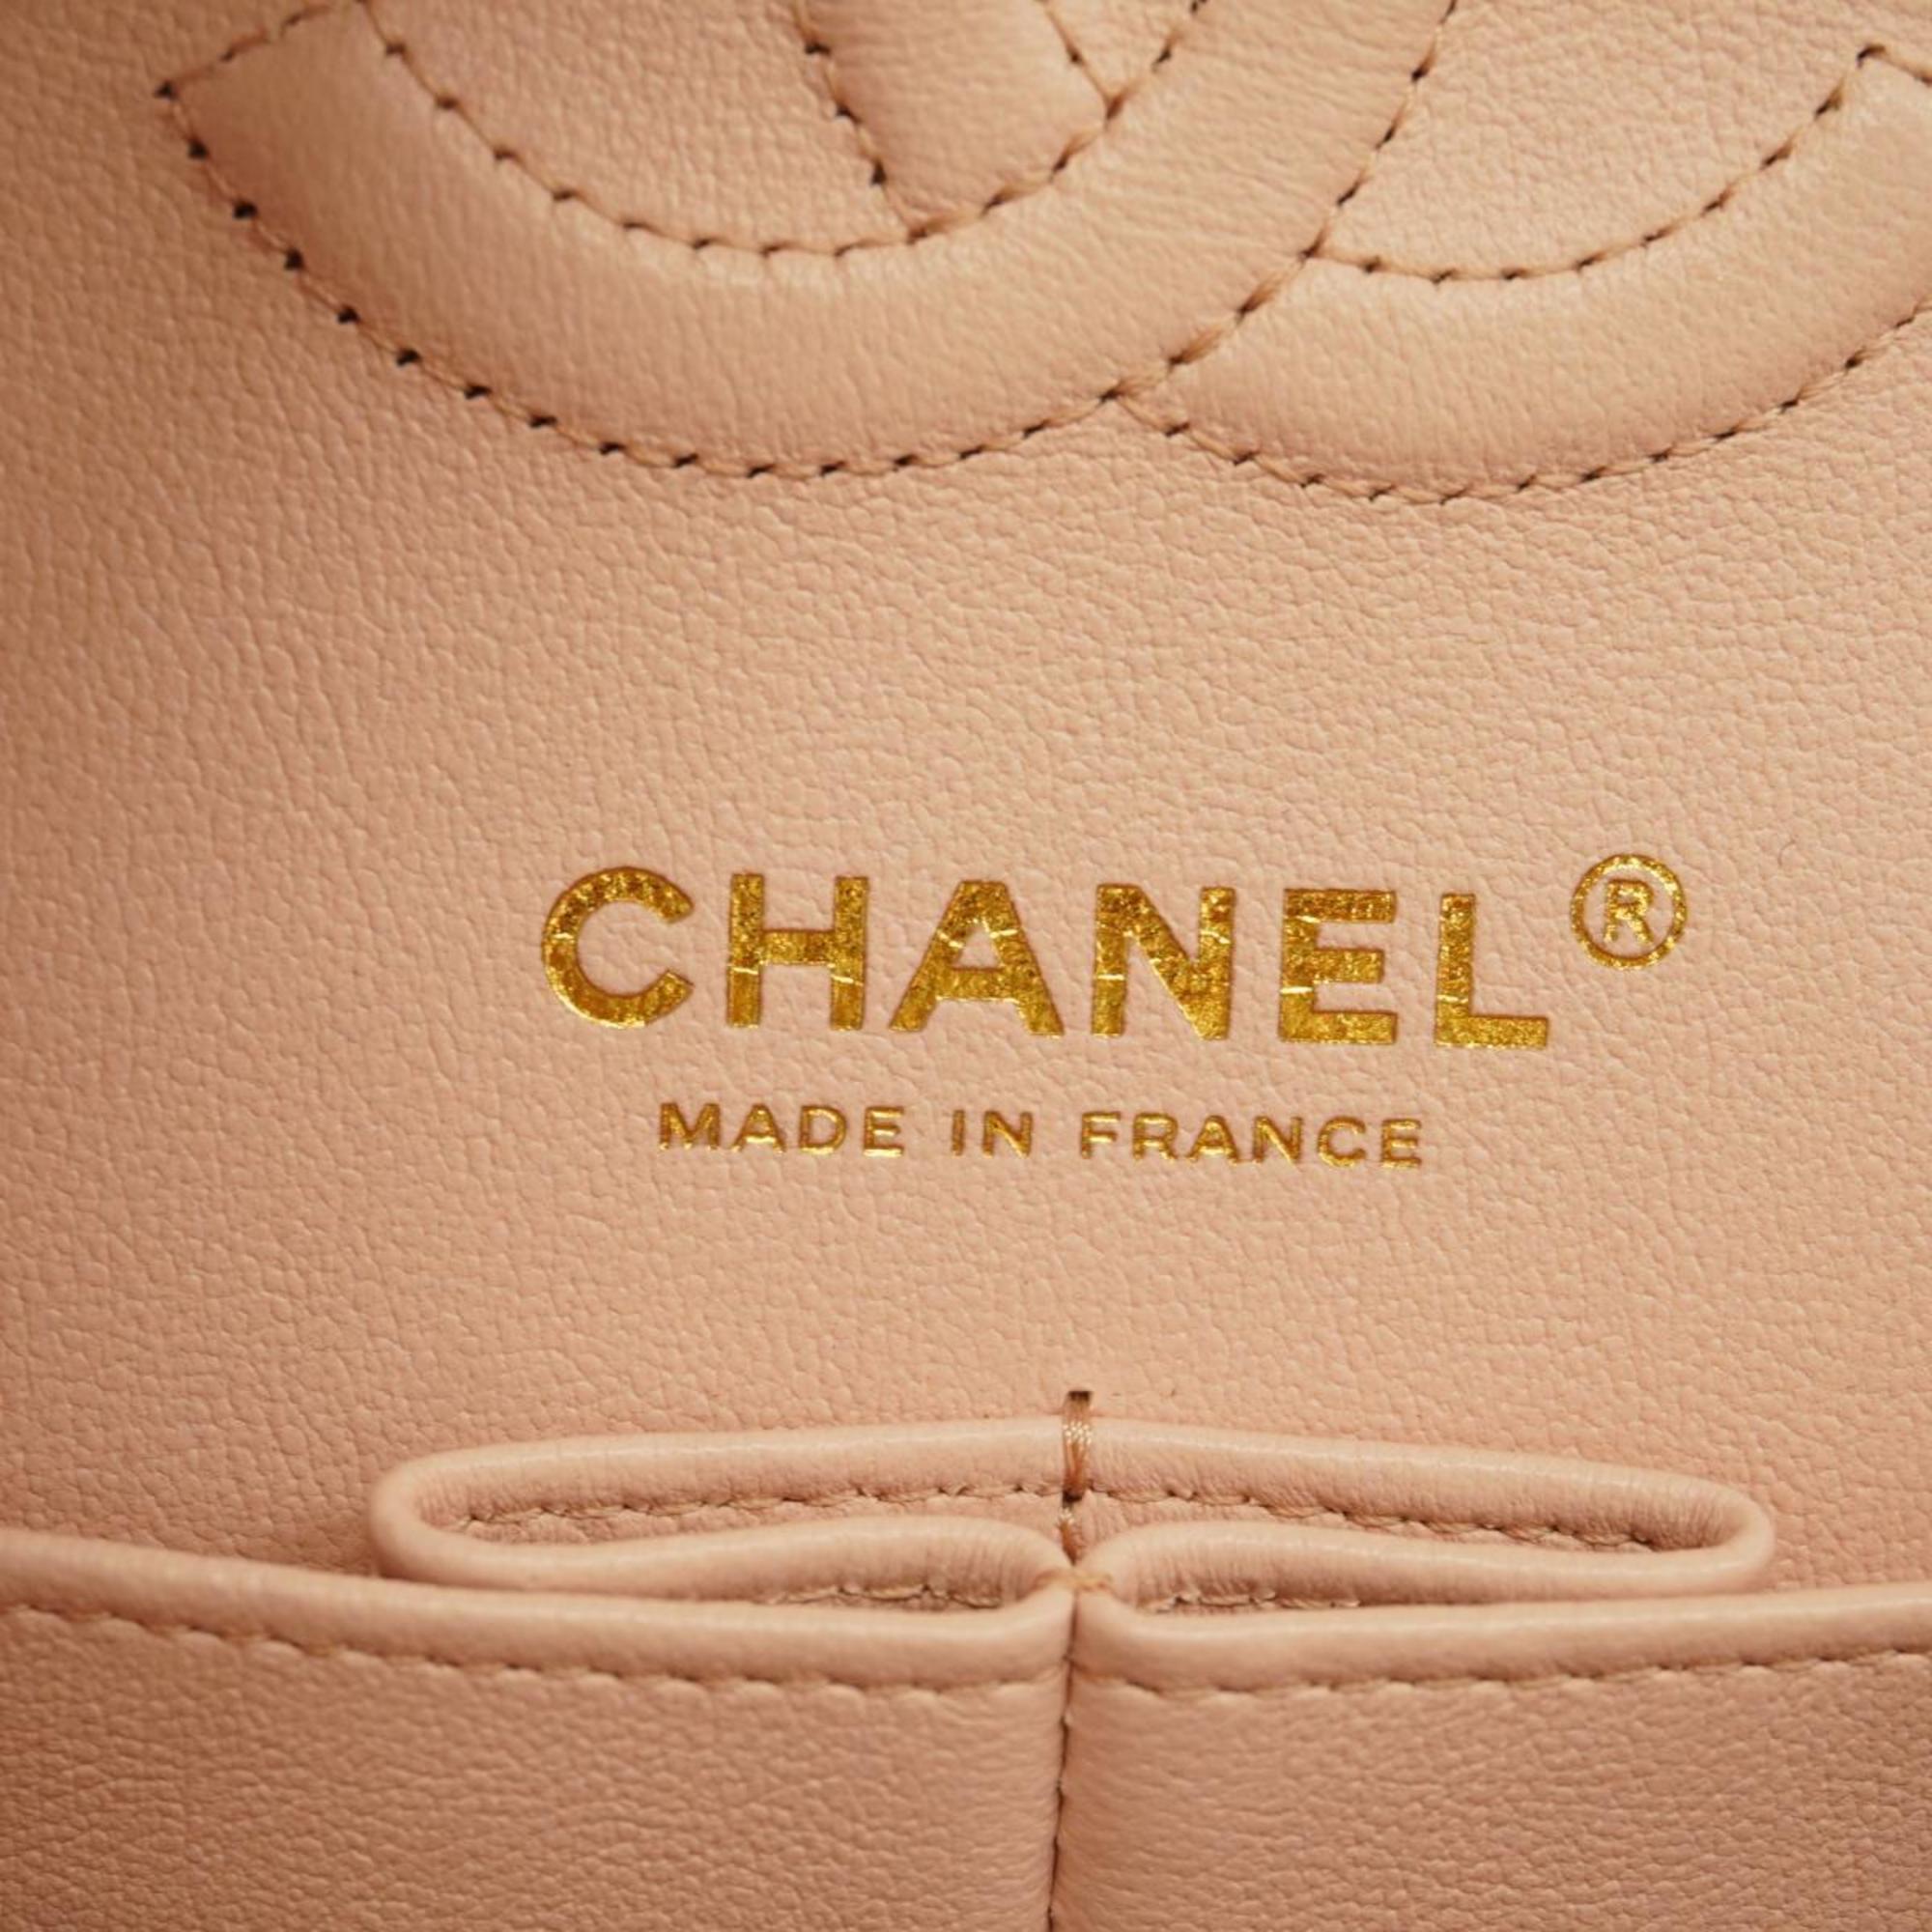 シャネル(Chanel) シャネル ショルダーバッグ マトラッセ Wフラップ Wチェーン キャビアスキン ピンク シャンパン  レディース